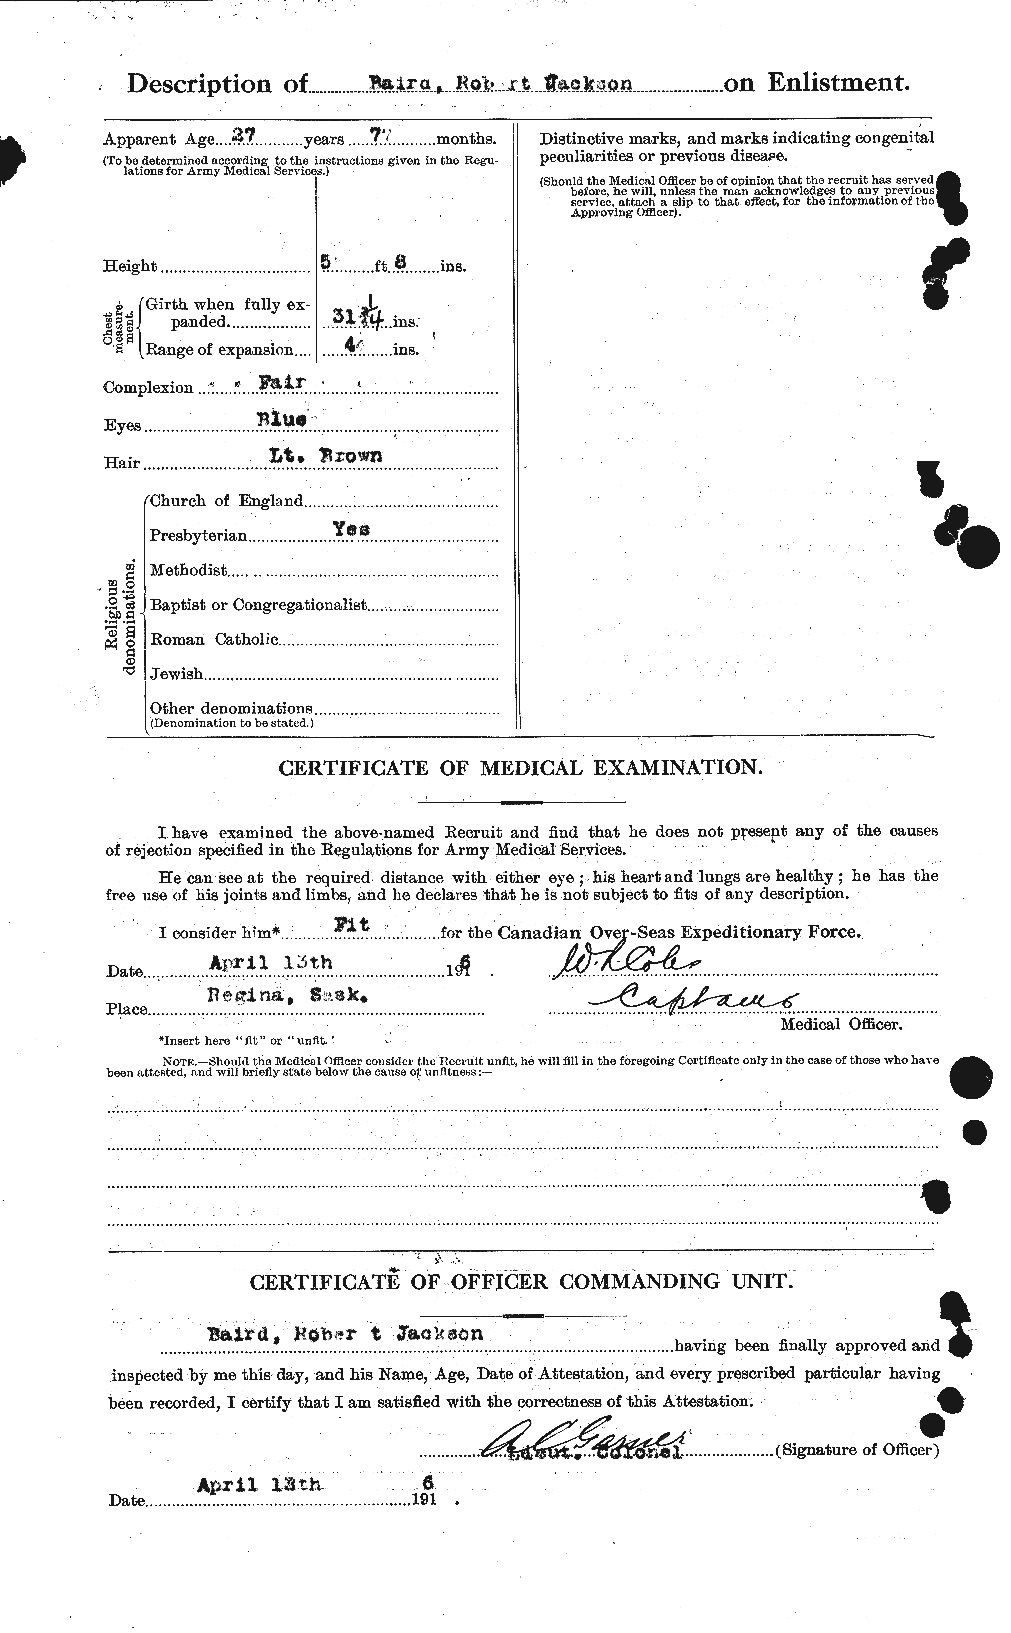 Dossiers du Personnel de la Première Guerre mondiale - CEC 226565b